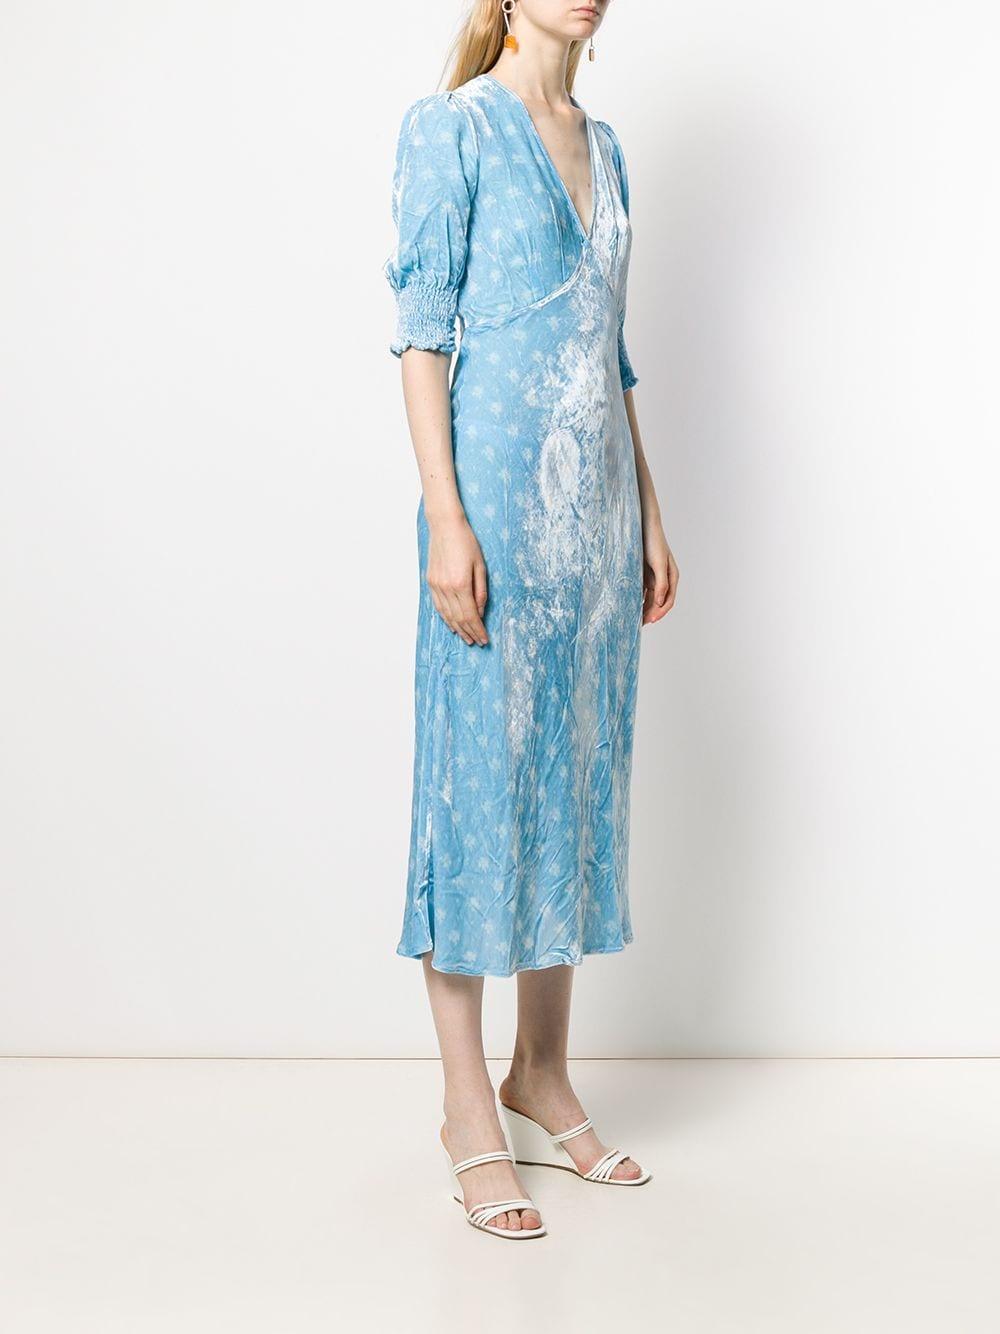 RIXO London Silk Floral Print Midi Dress in Blue - Lyst